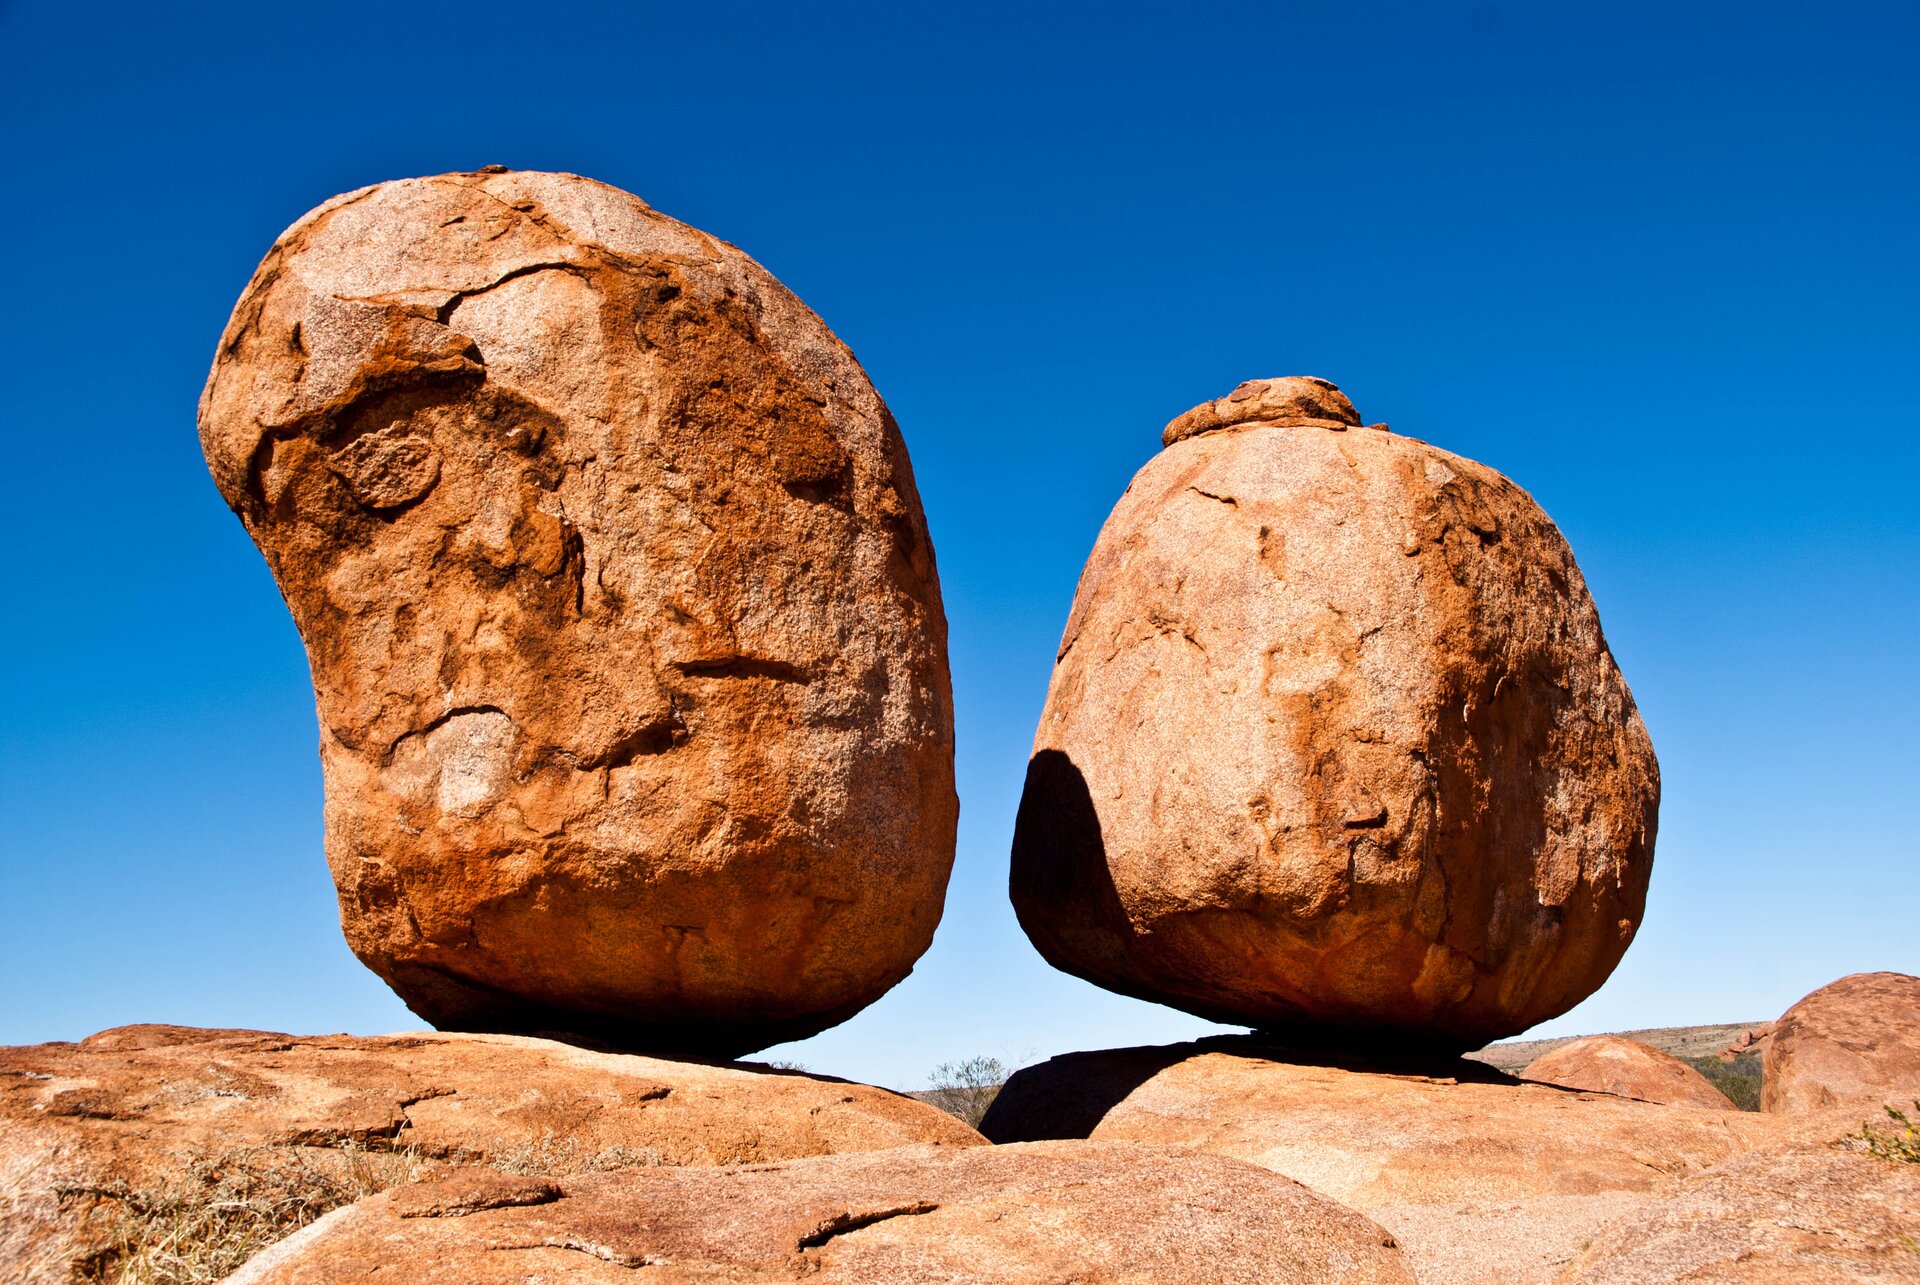 Na zdjęciu dwie owalne skały stojące na powierzchni skalnej. Skała z lewej strony nieco większa. Bloki skalne mają kolor ceglasty. W tle niebieskie niebo.